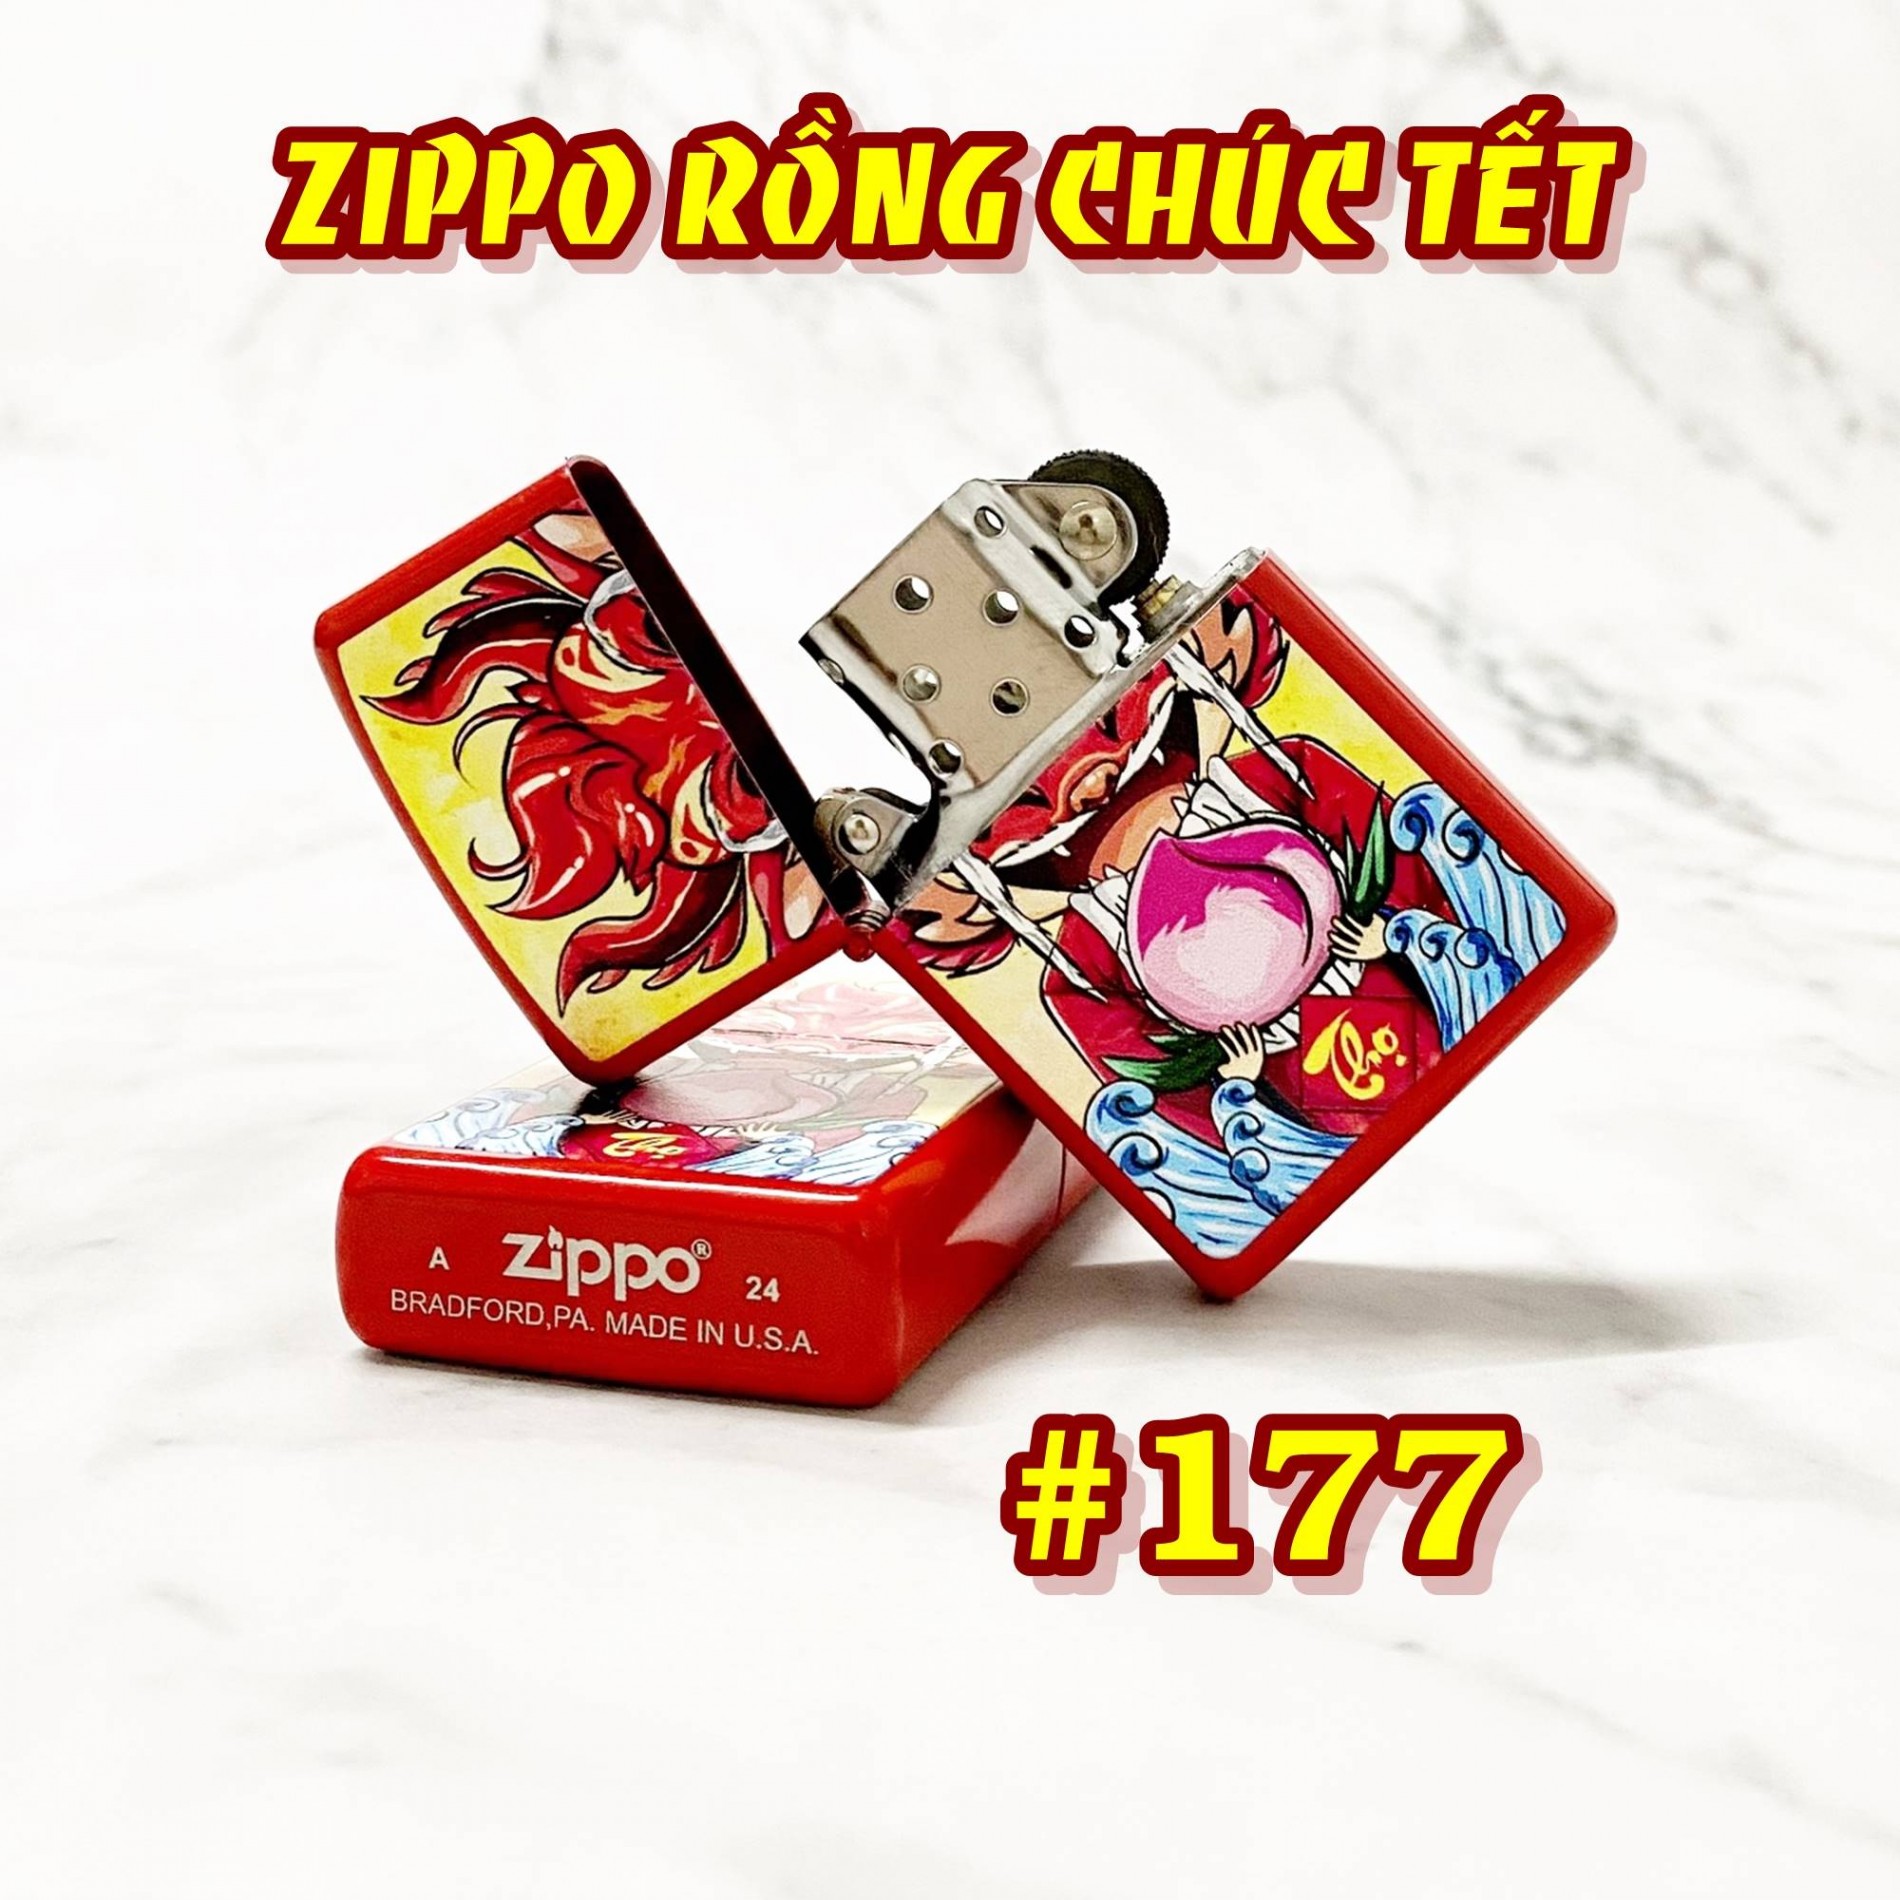 zippo_rong_chuc_tet_177